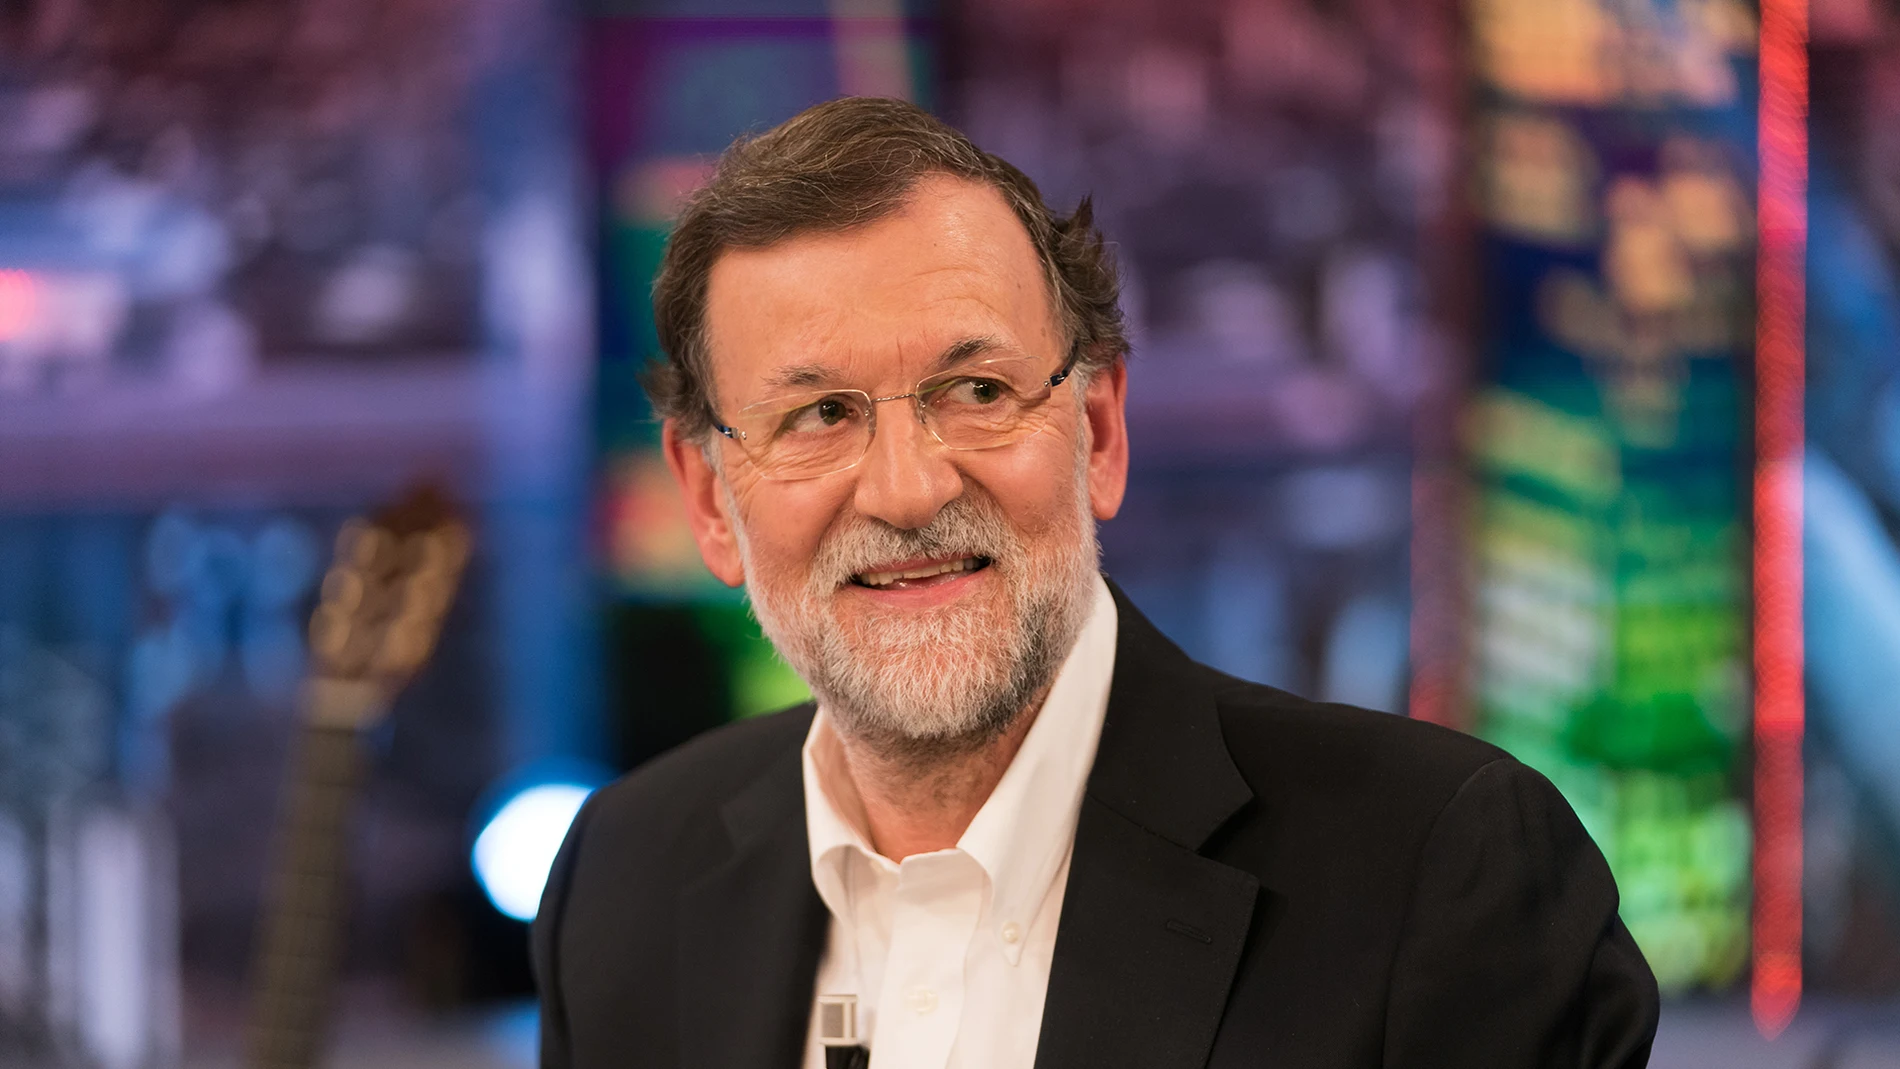 Mariano Rajoy comenta el momento en el que Pedro Sánchez tiró su colchón de la Moncloa: "Le hubiera ido mejor continuar con mi colchón, porque se le hubieran pegado algunas buenas cualidades"